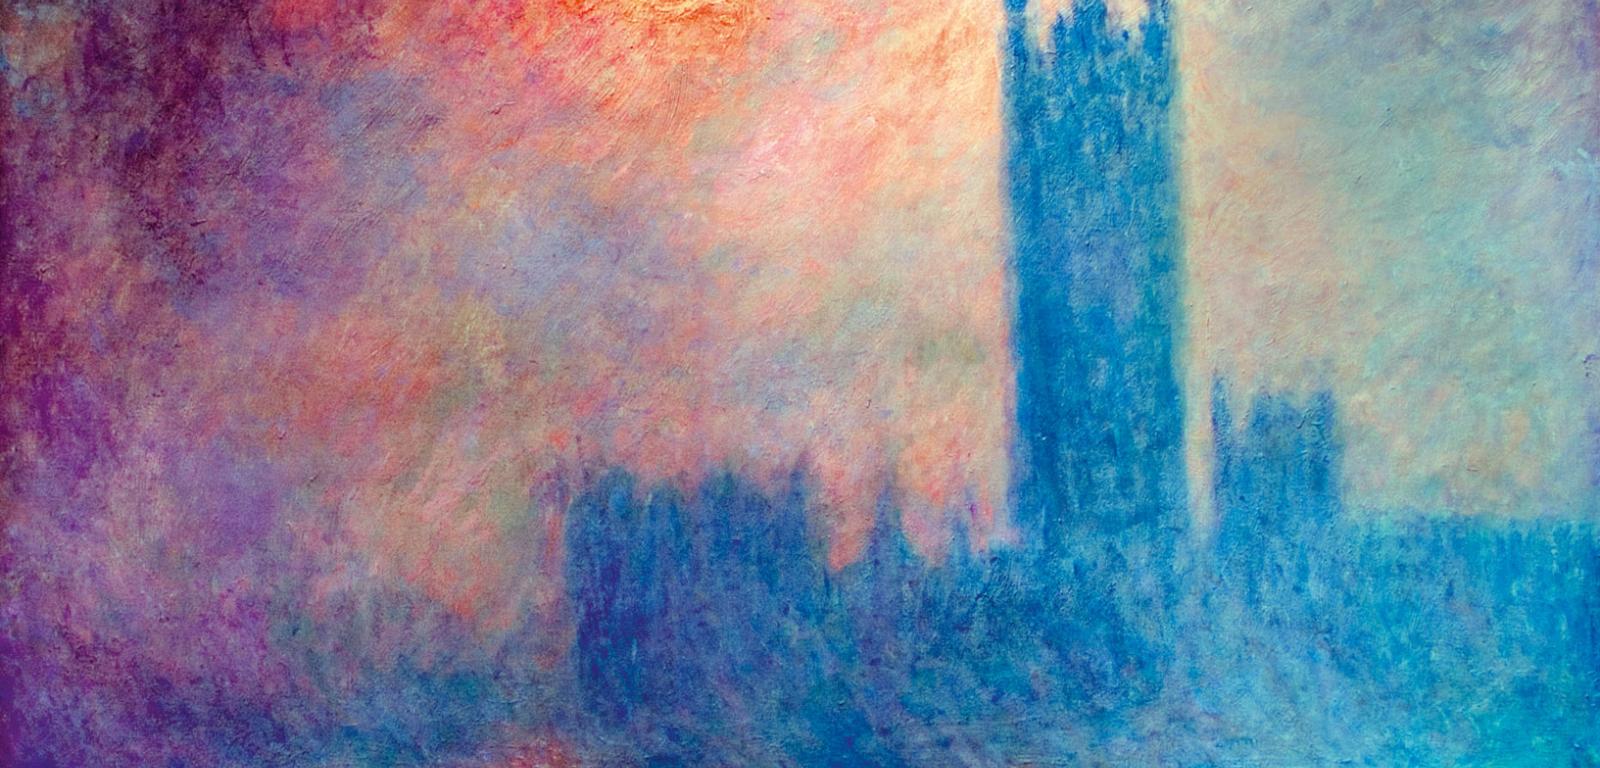 Światło słoneczne, mgła i… smog – Pałac Westminsterski na obrazie Claude’a Moneta z 1904 r.